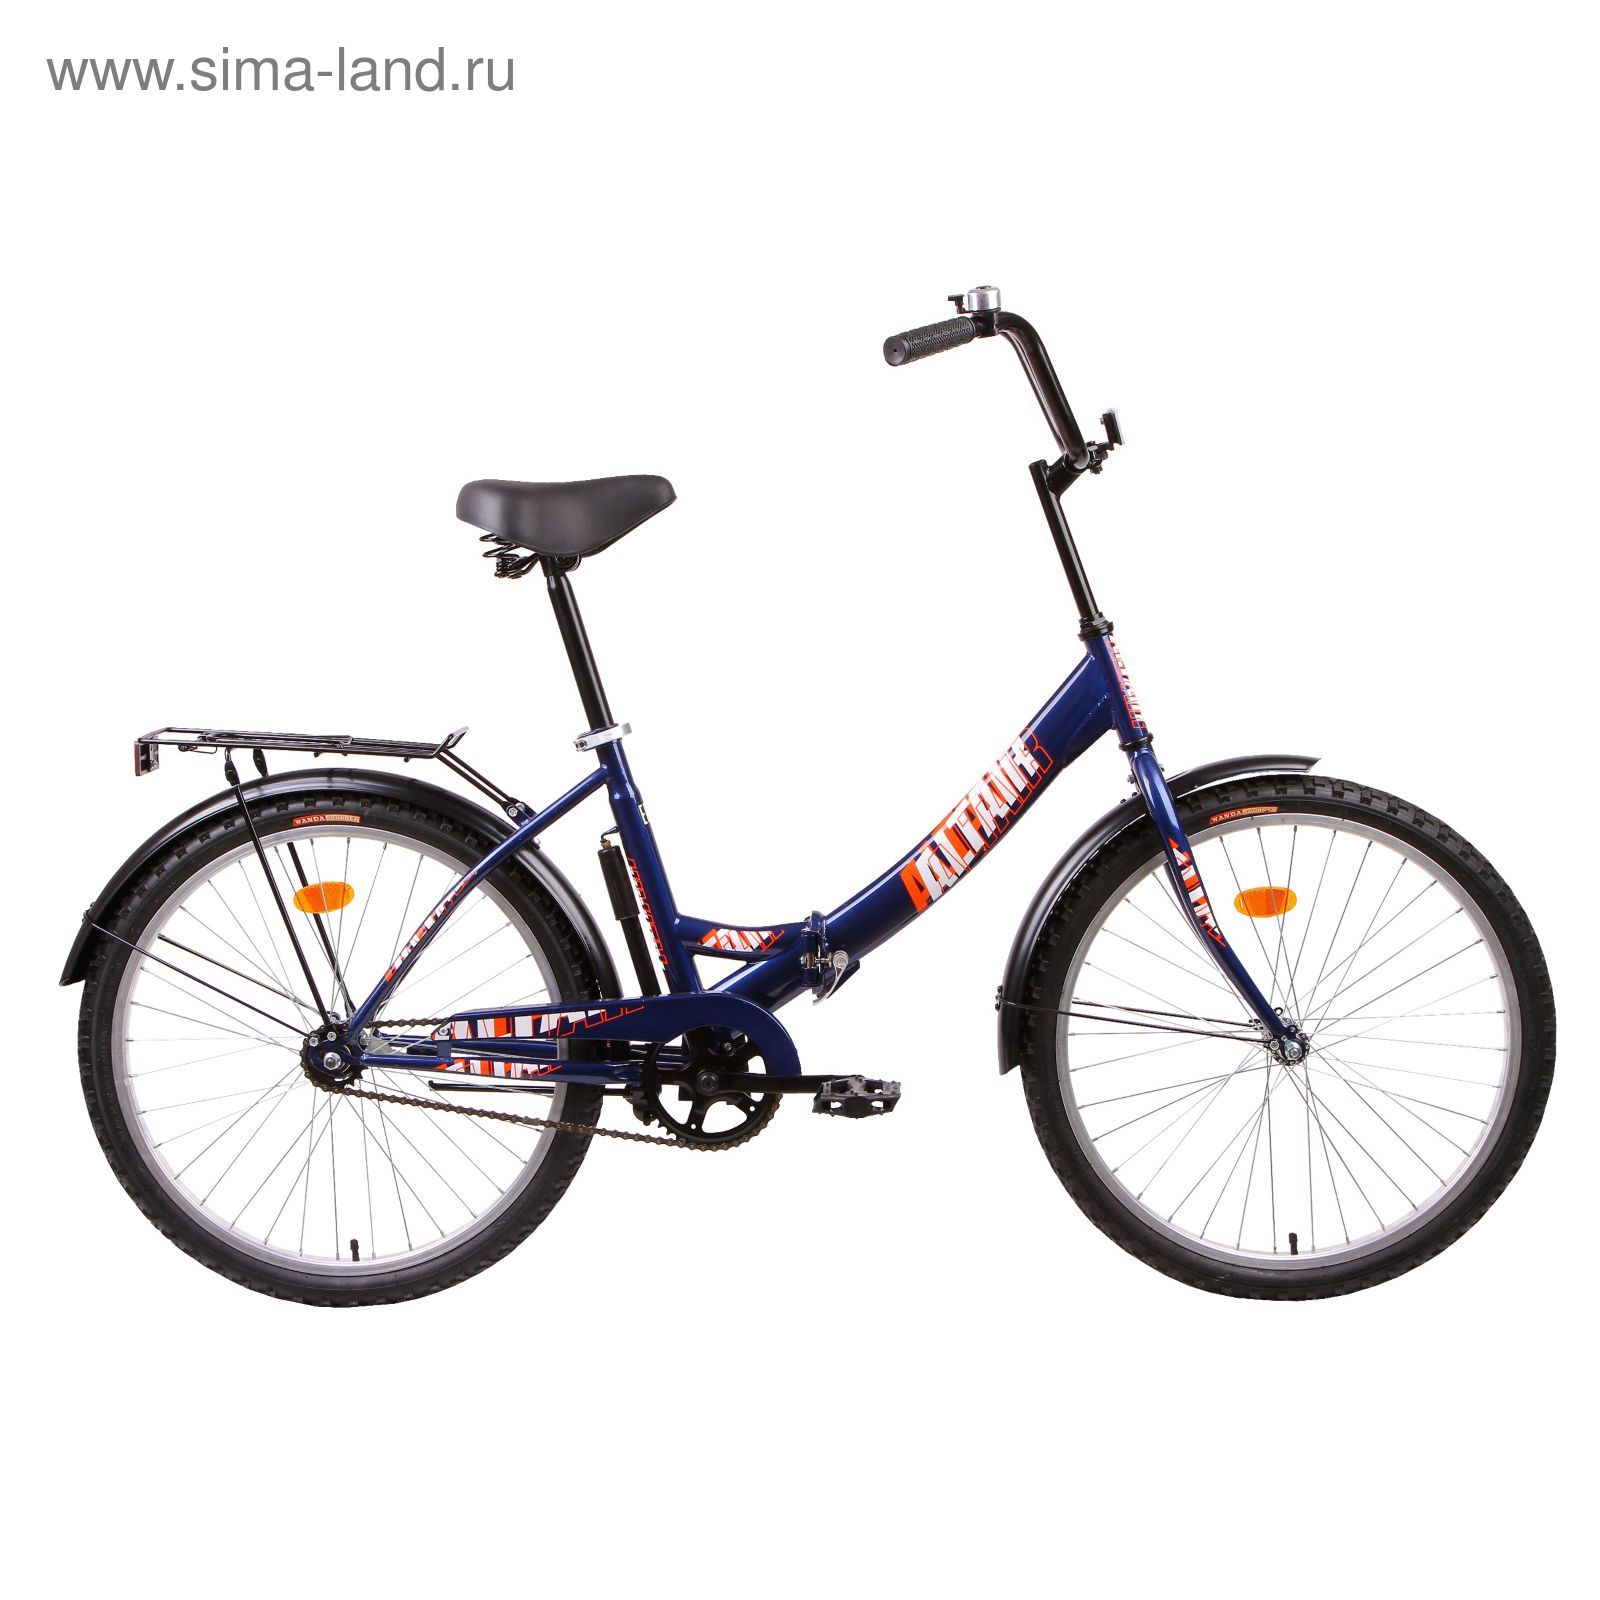 Велосипед 24" Altair City 24, 2016, цвет синий, размер 16"